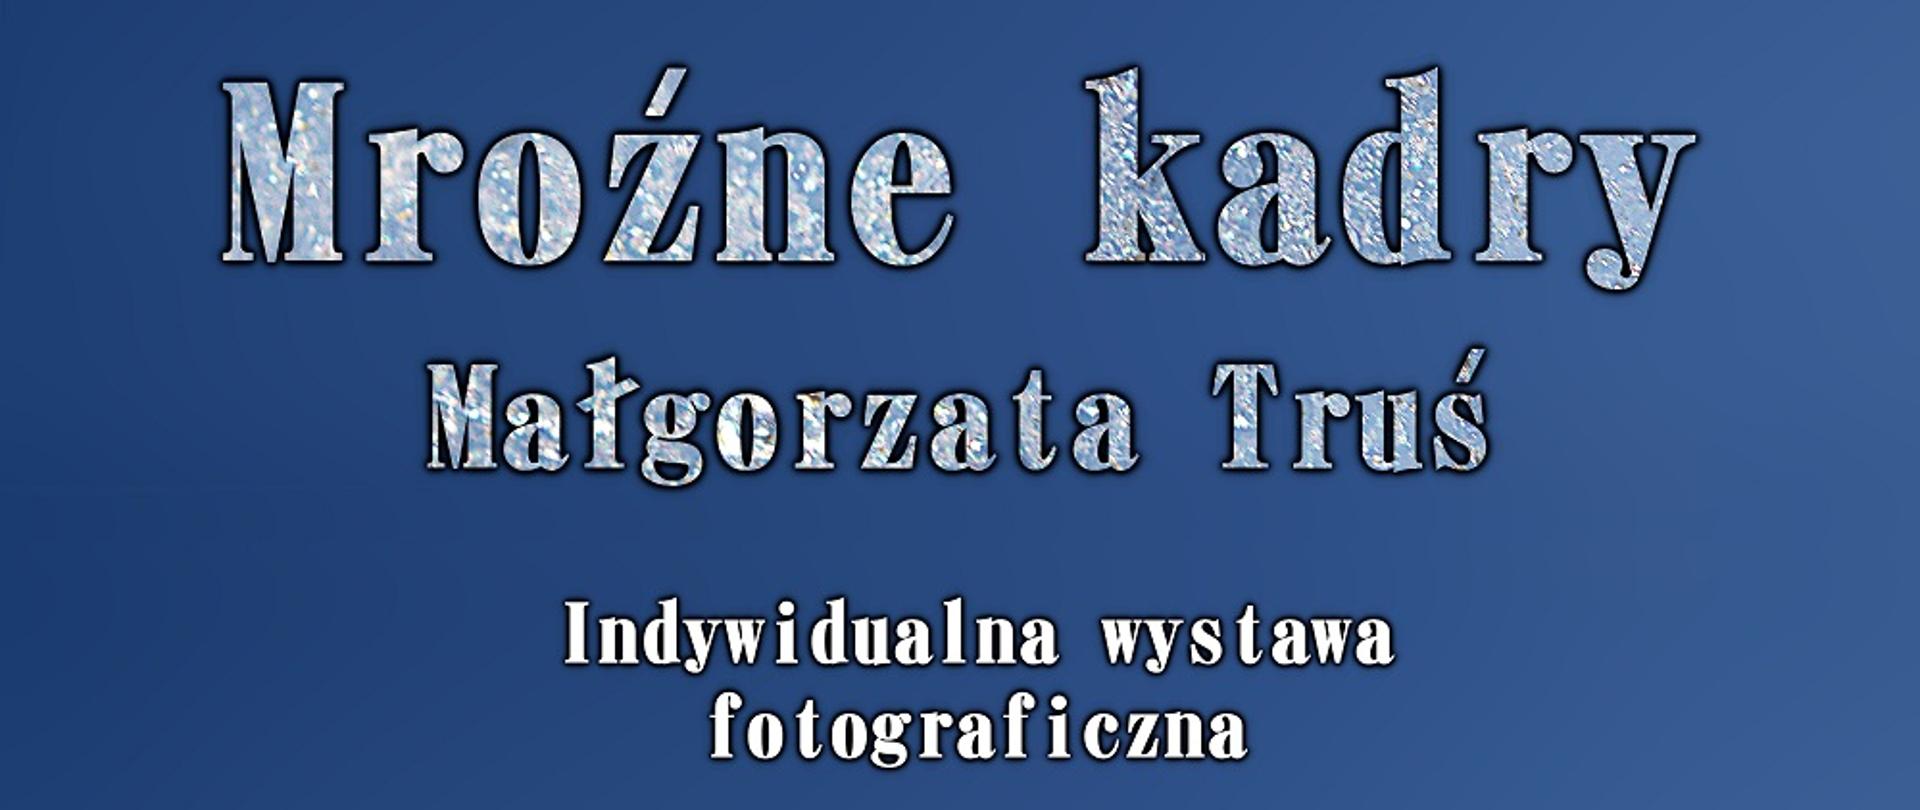  Plakat zapowiadający wystawę fotograficzną Małgorzaty Truś pt. Mroźne kadry. Plakat ma niebieskie tłu, na dole plakatu fragment lodu oraz logo Studium.